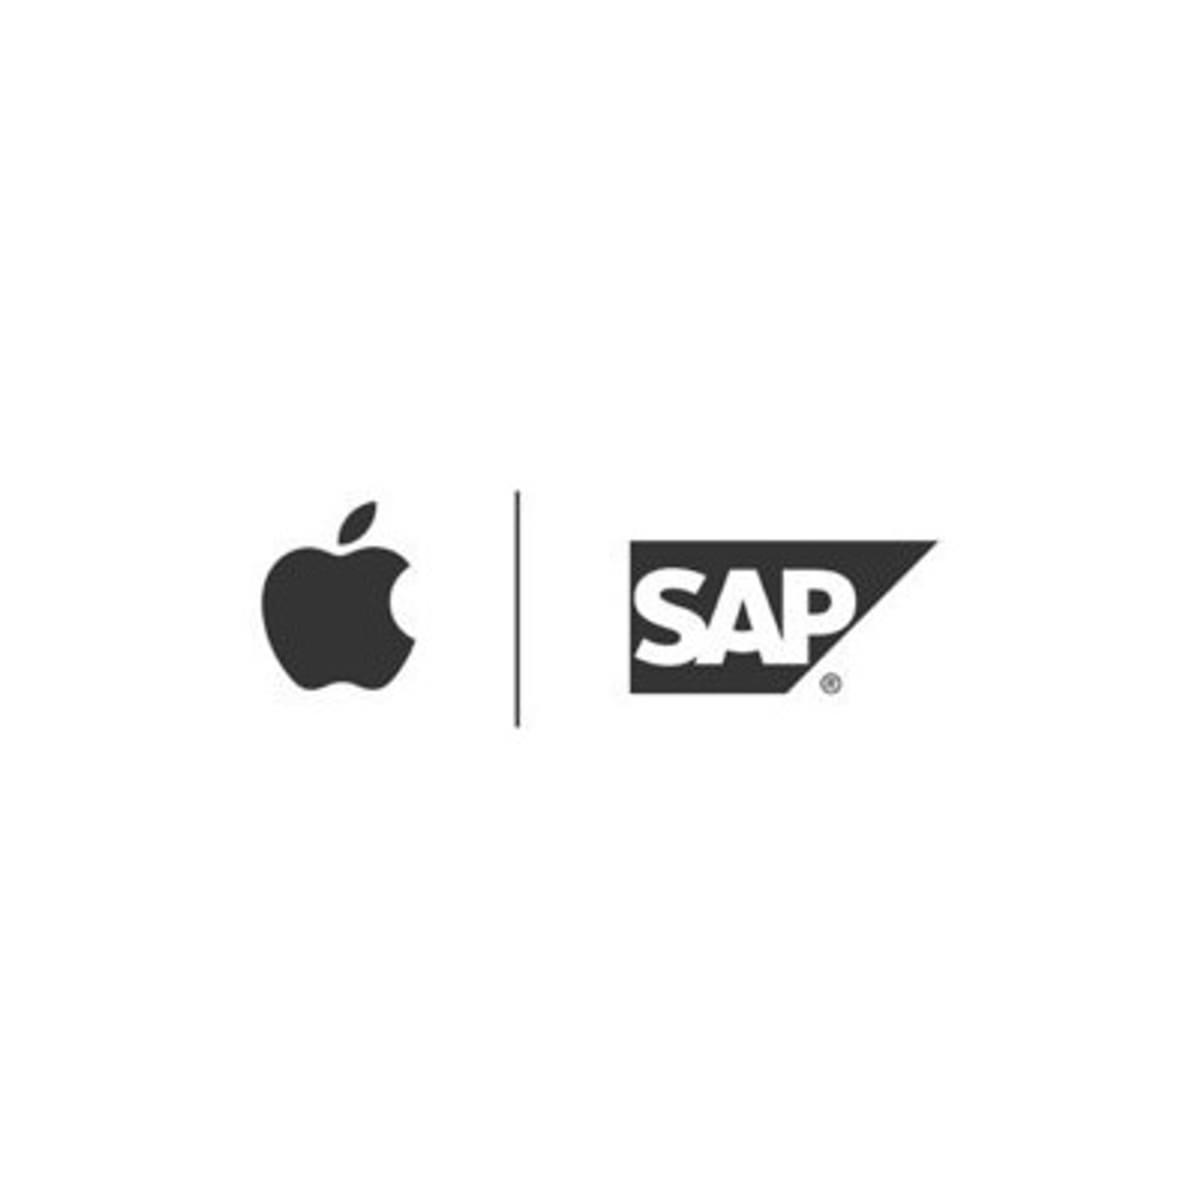 Apple en SAP werken nauwer samen rond zakelijke iPhone apps image